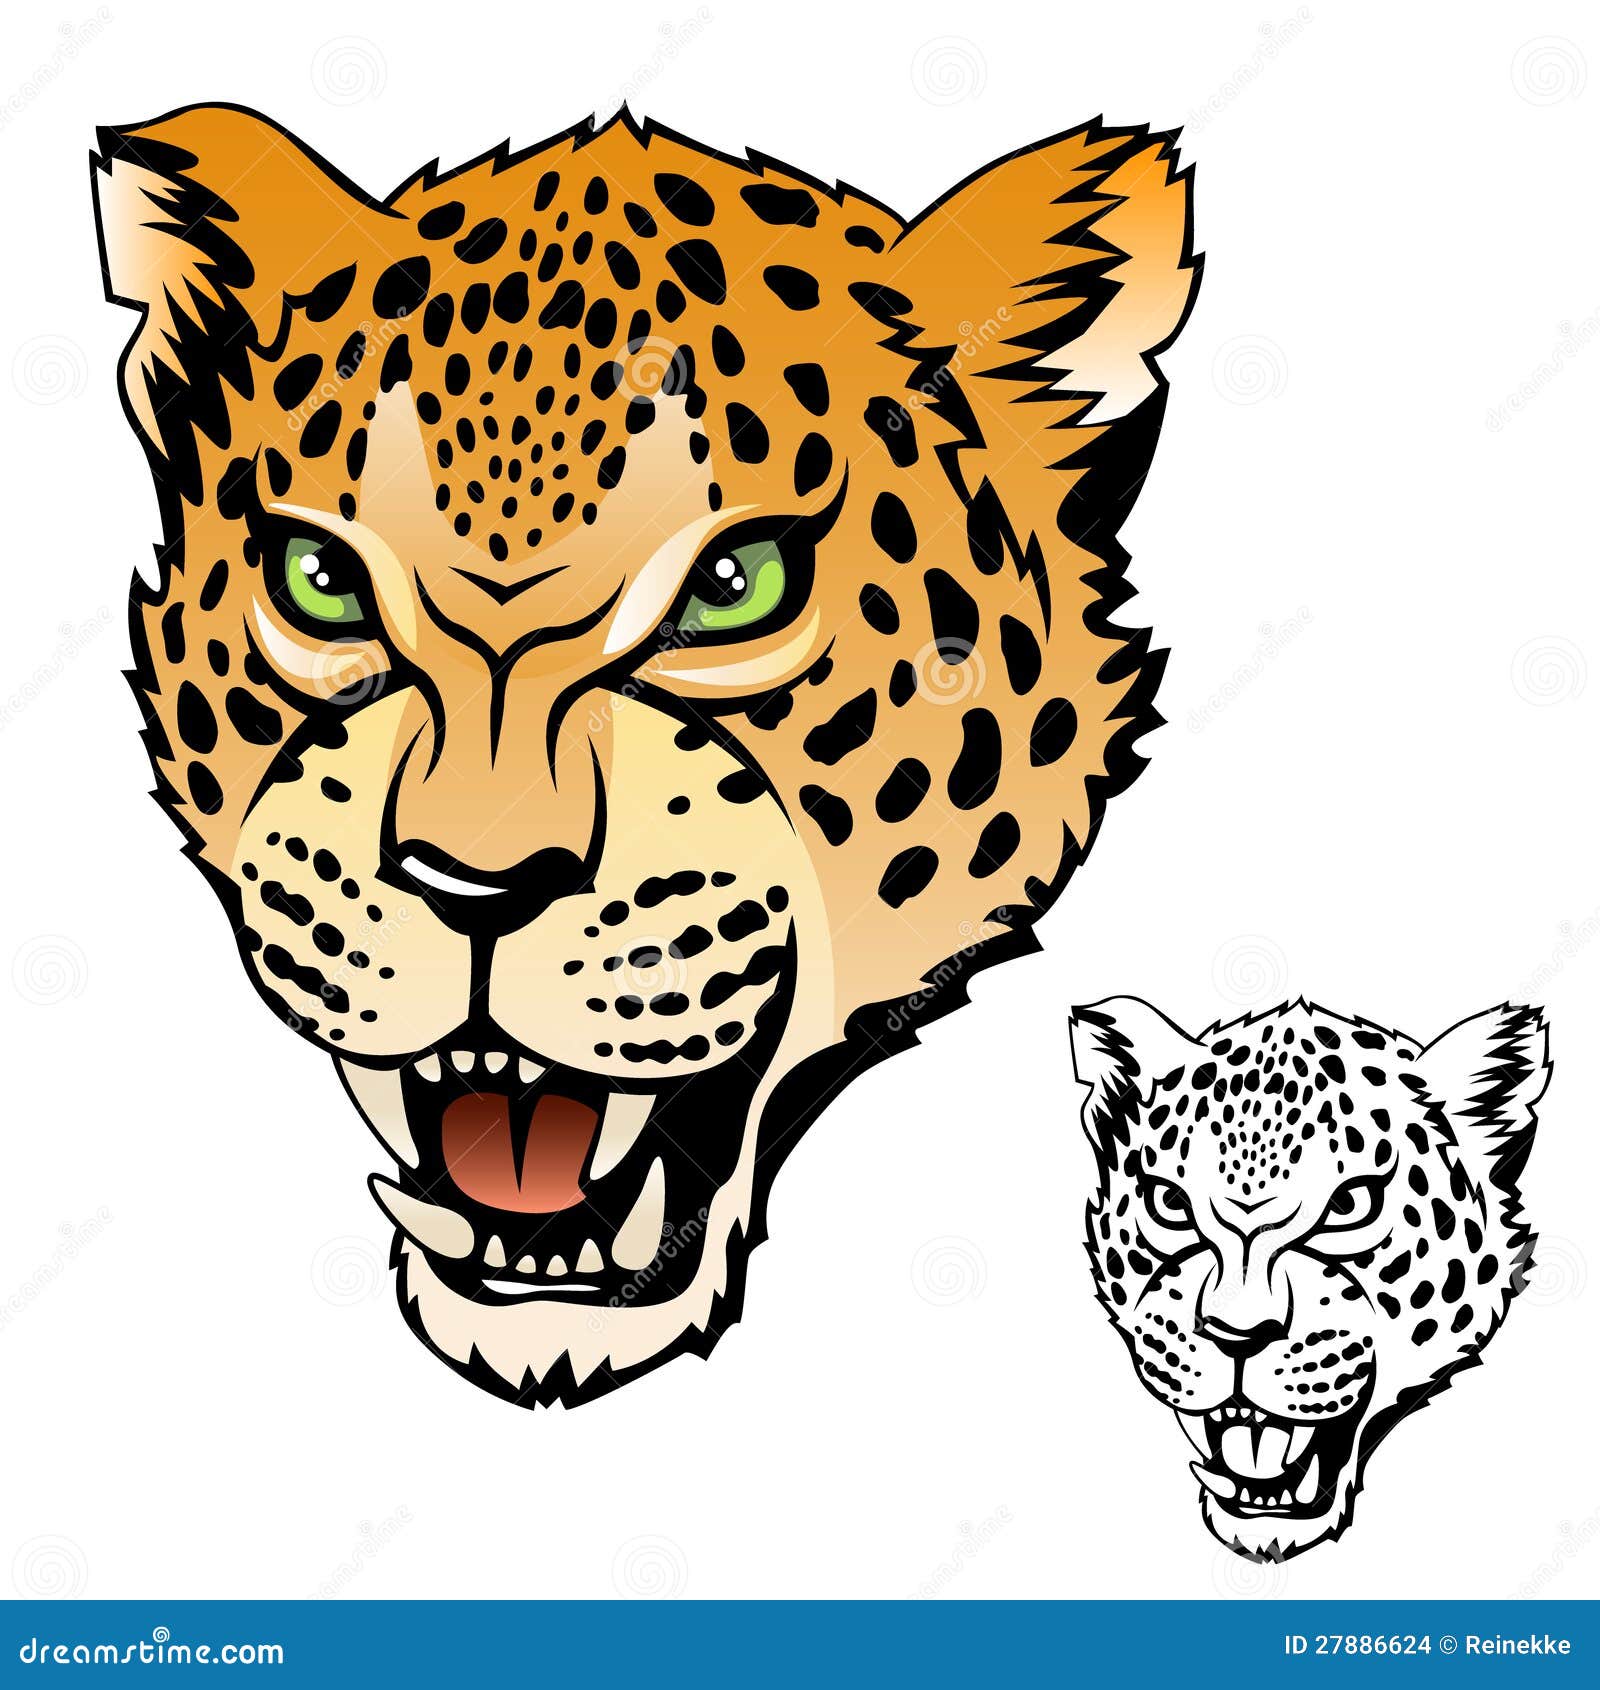 jaguar mascot clipart - photo #43